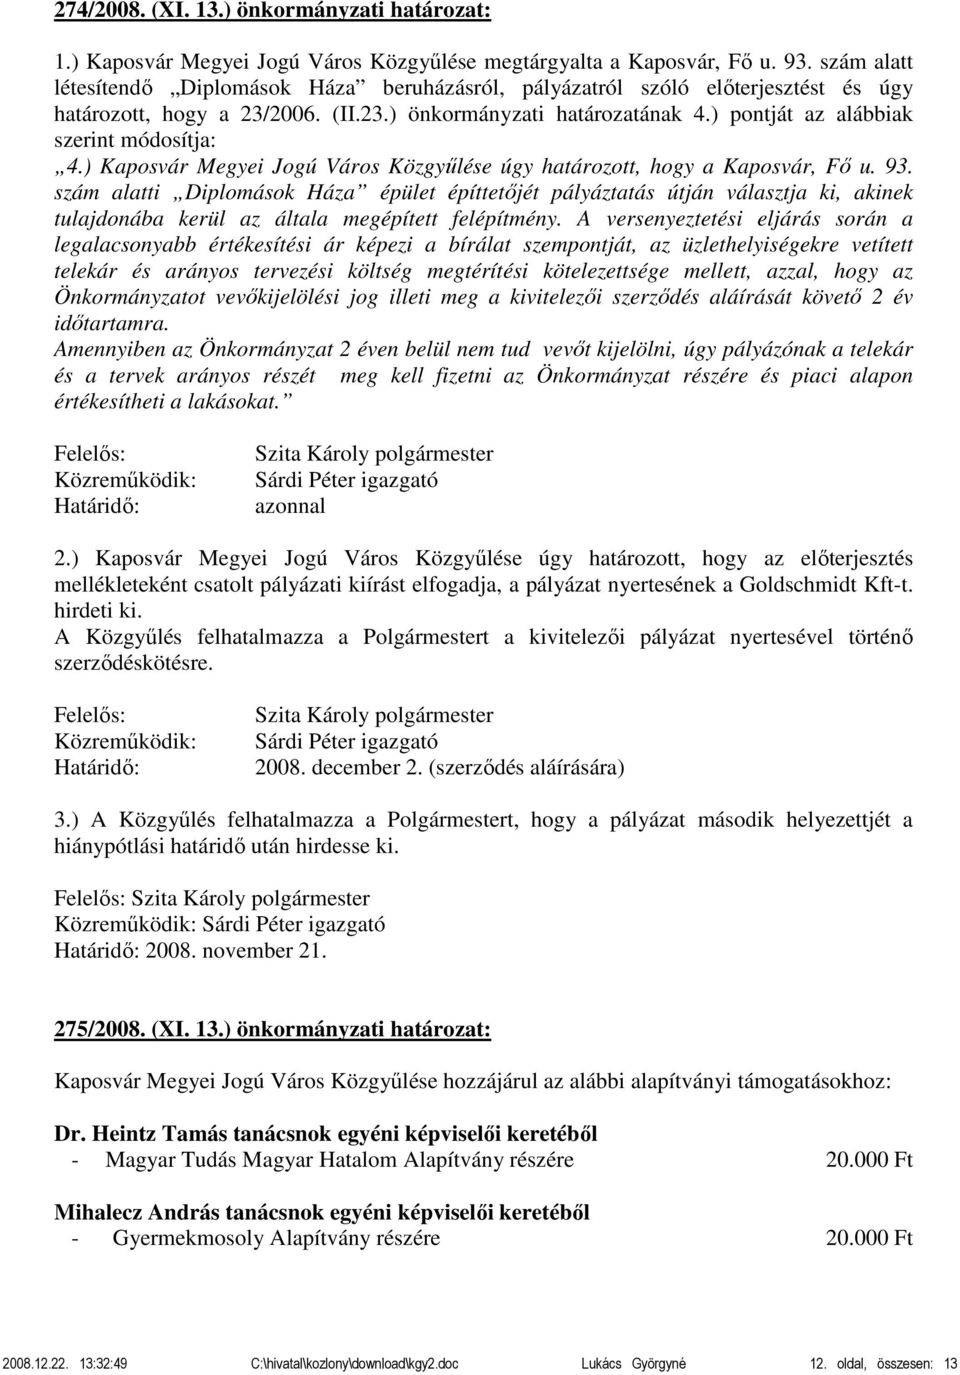 ) pontját az alábbiak szerint módosítja: 4.) Kaposvár Megyei Jogú Város Közgyűlése úgy határozott, hogy a Kaposvár, Fő u. 93.